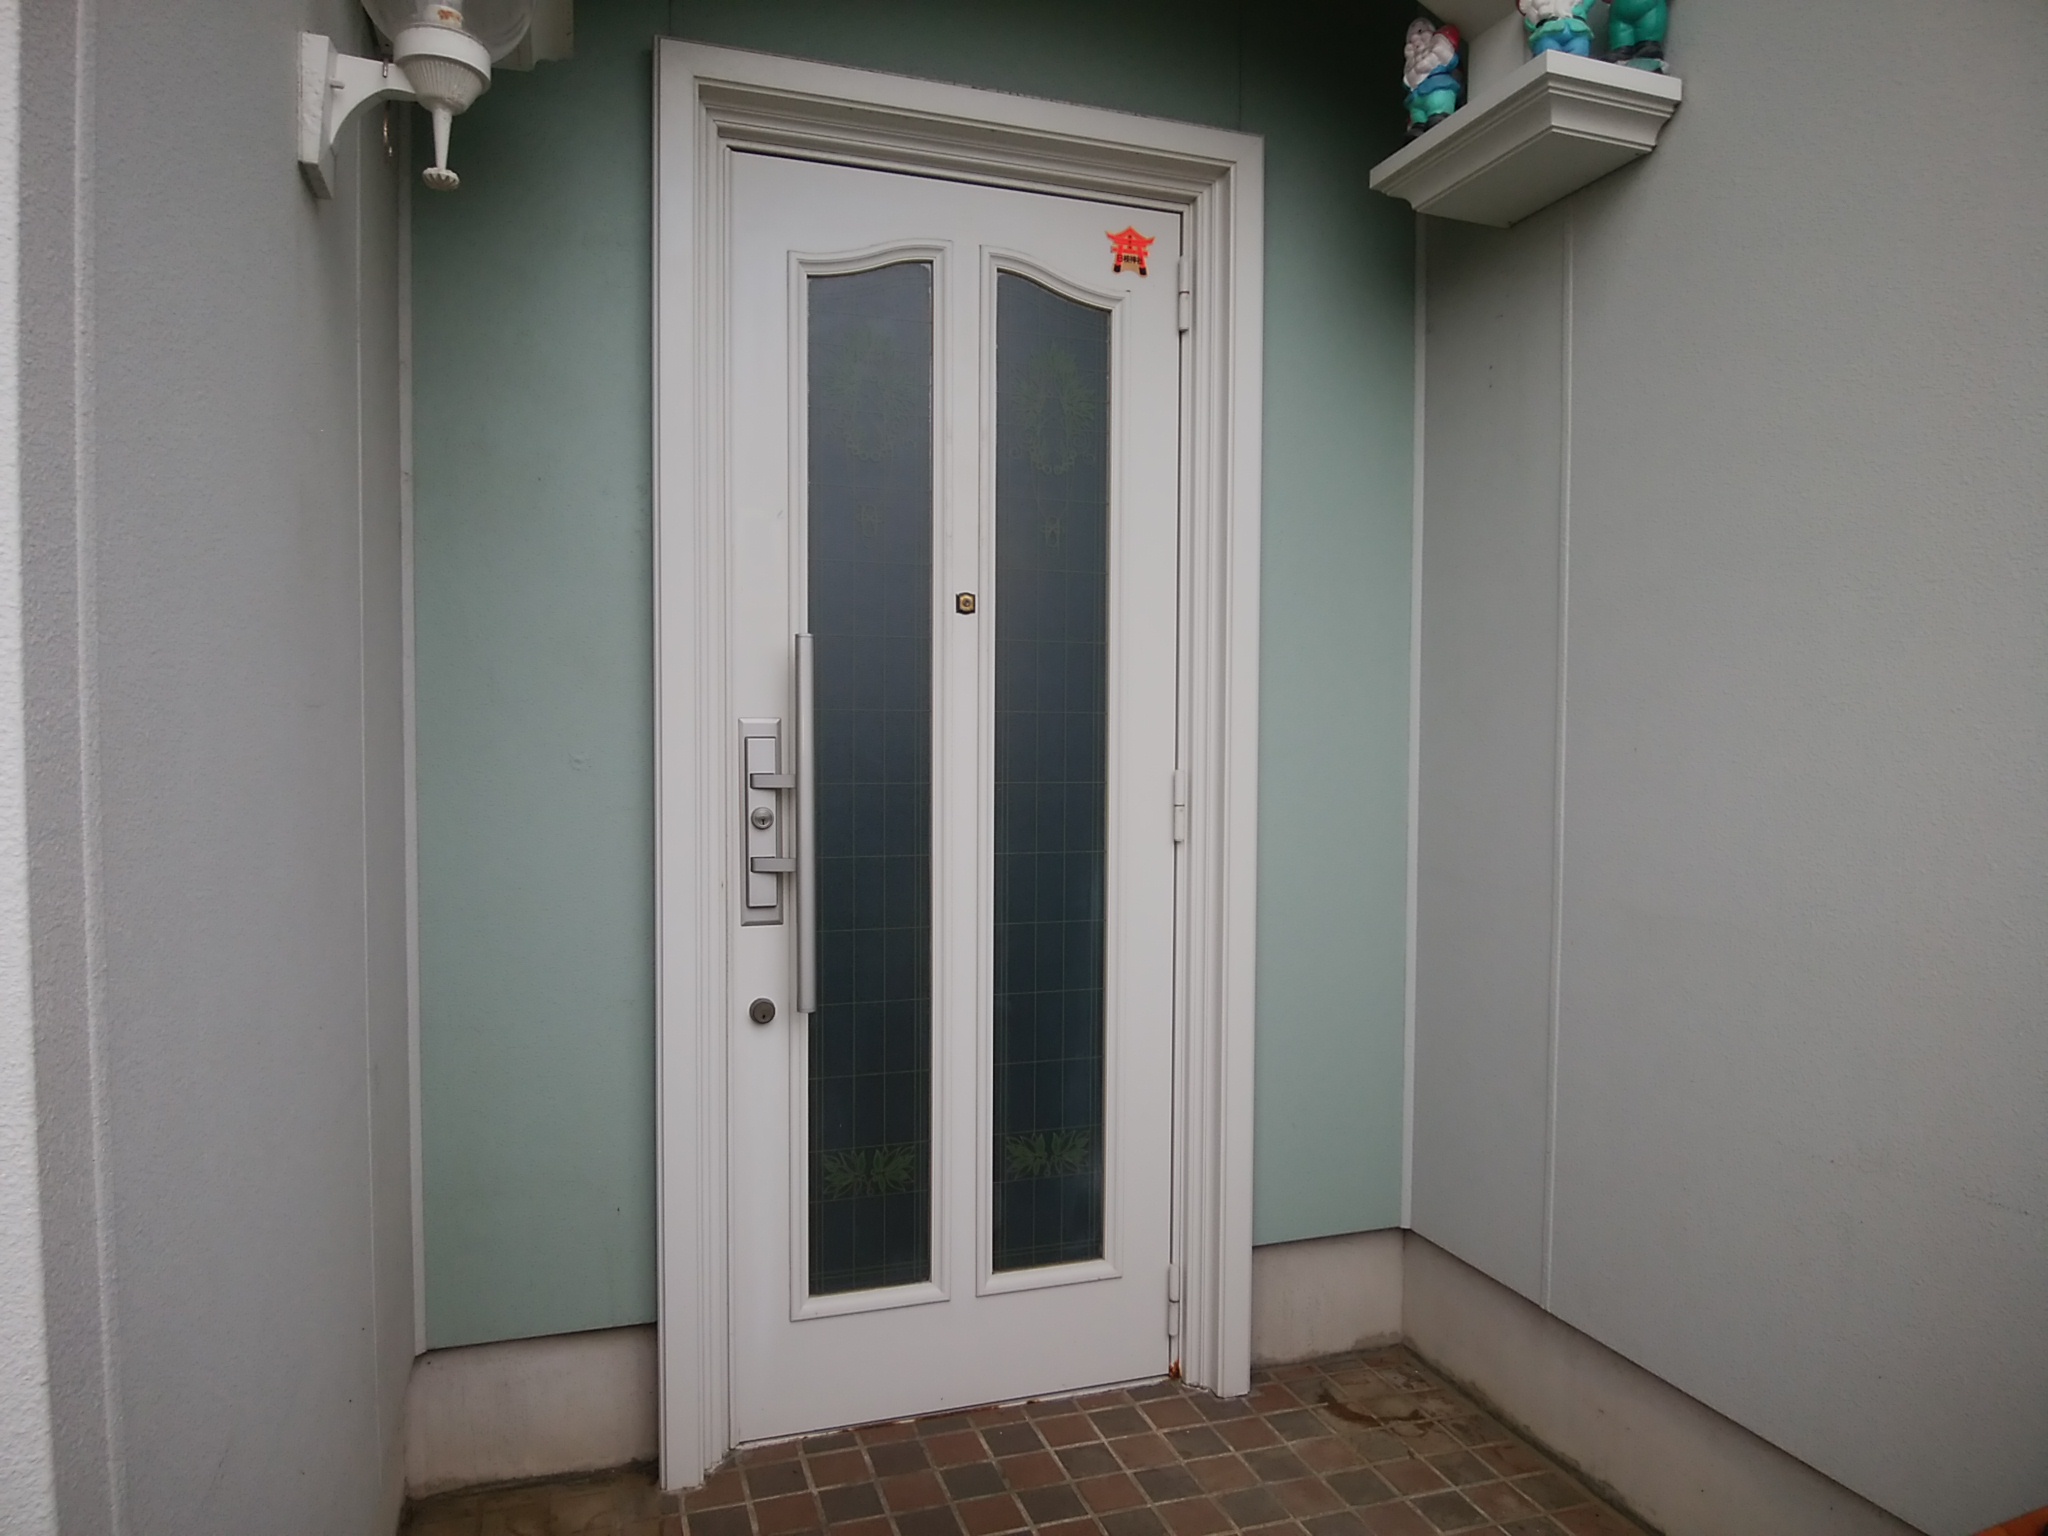 積水ハウスの建物で玄関ドアと窓をカバー工法で交換リフォーム【LIXILリシェントP77型】玄関ドアのリフォームなら玄関ドアマイスターへお任せください